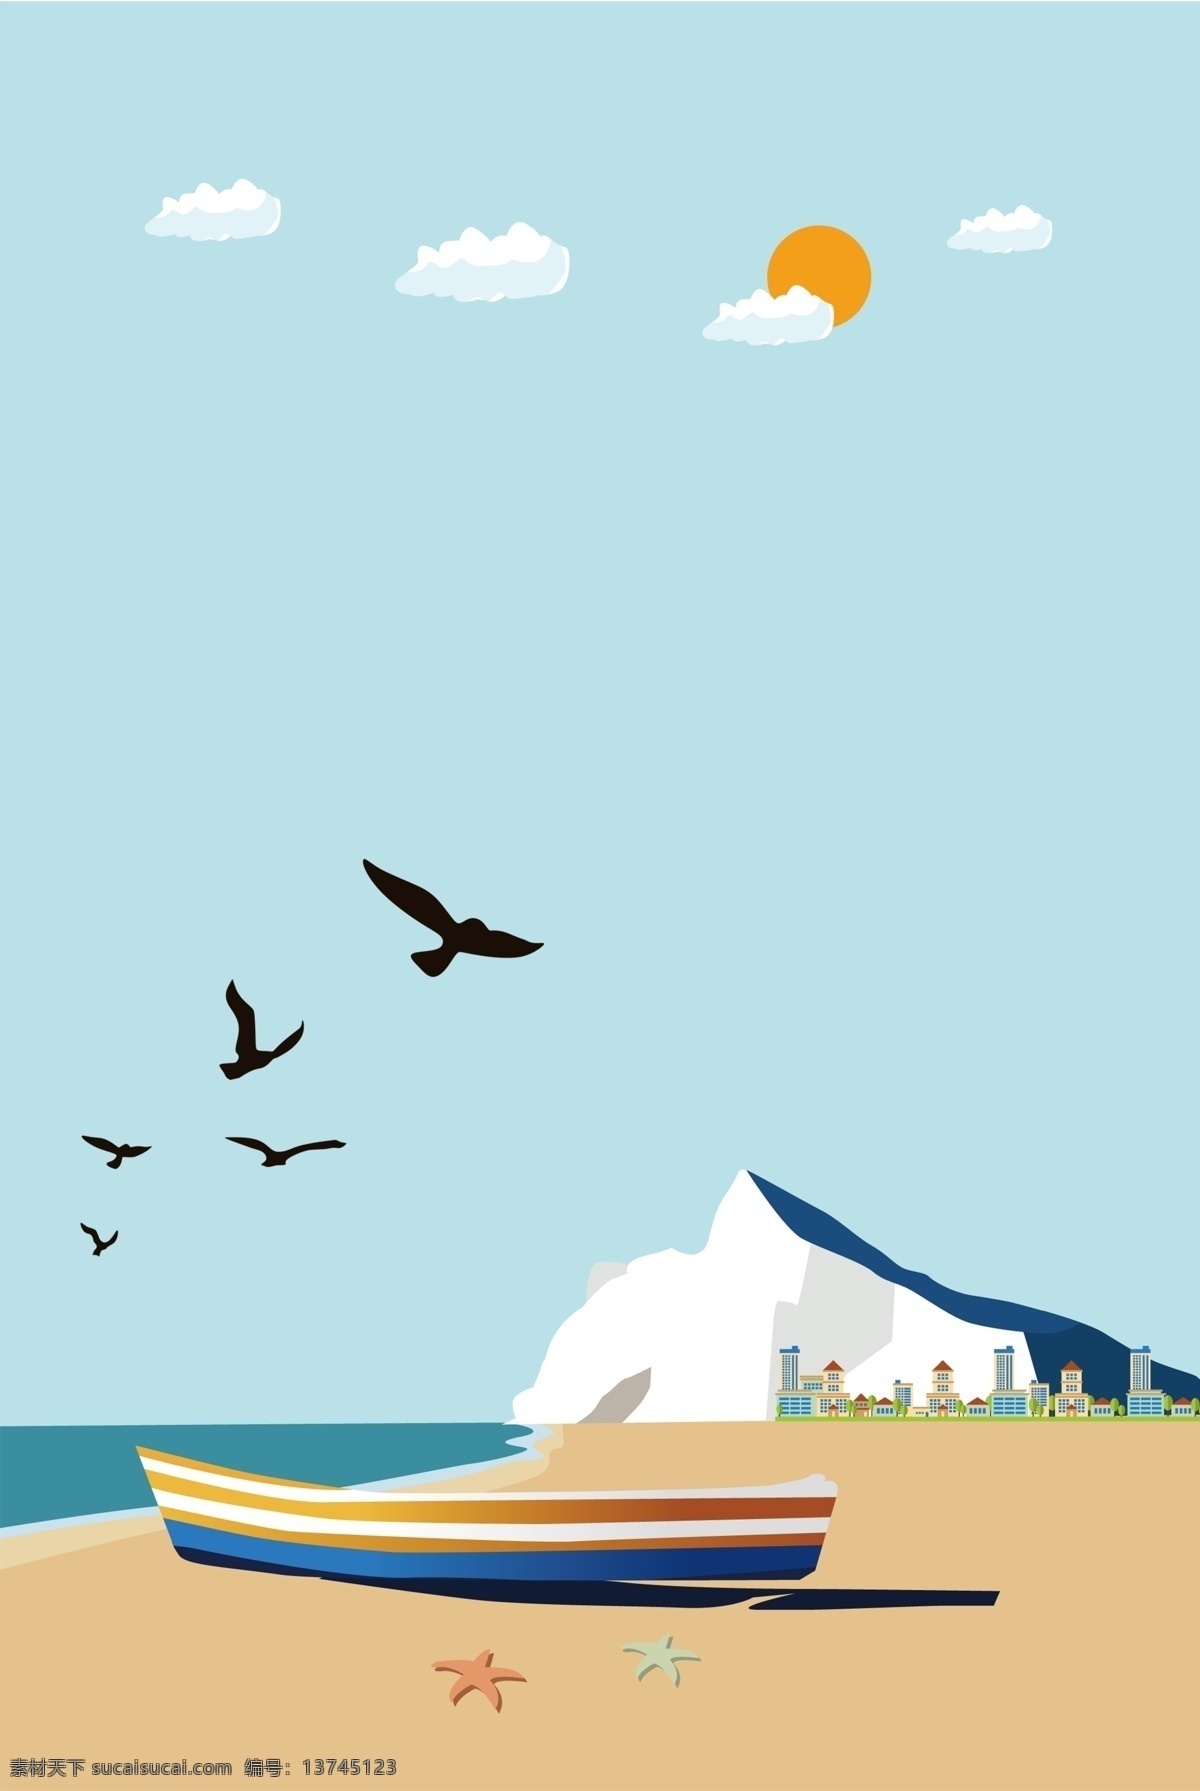 蓝色 简约 沙滩 海鸥 海星 背景 沙滩风景 大海